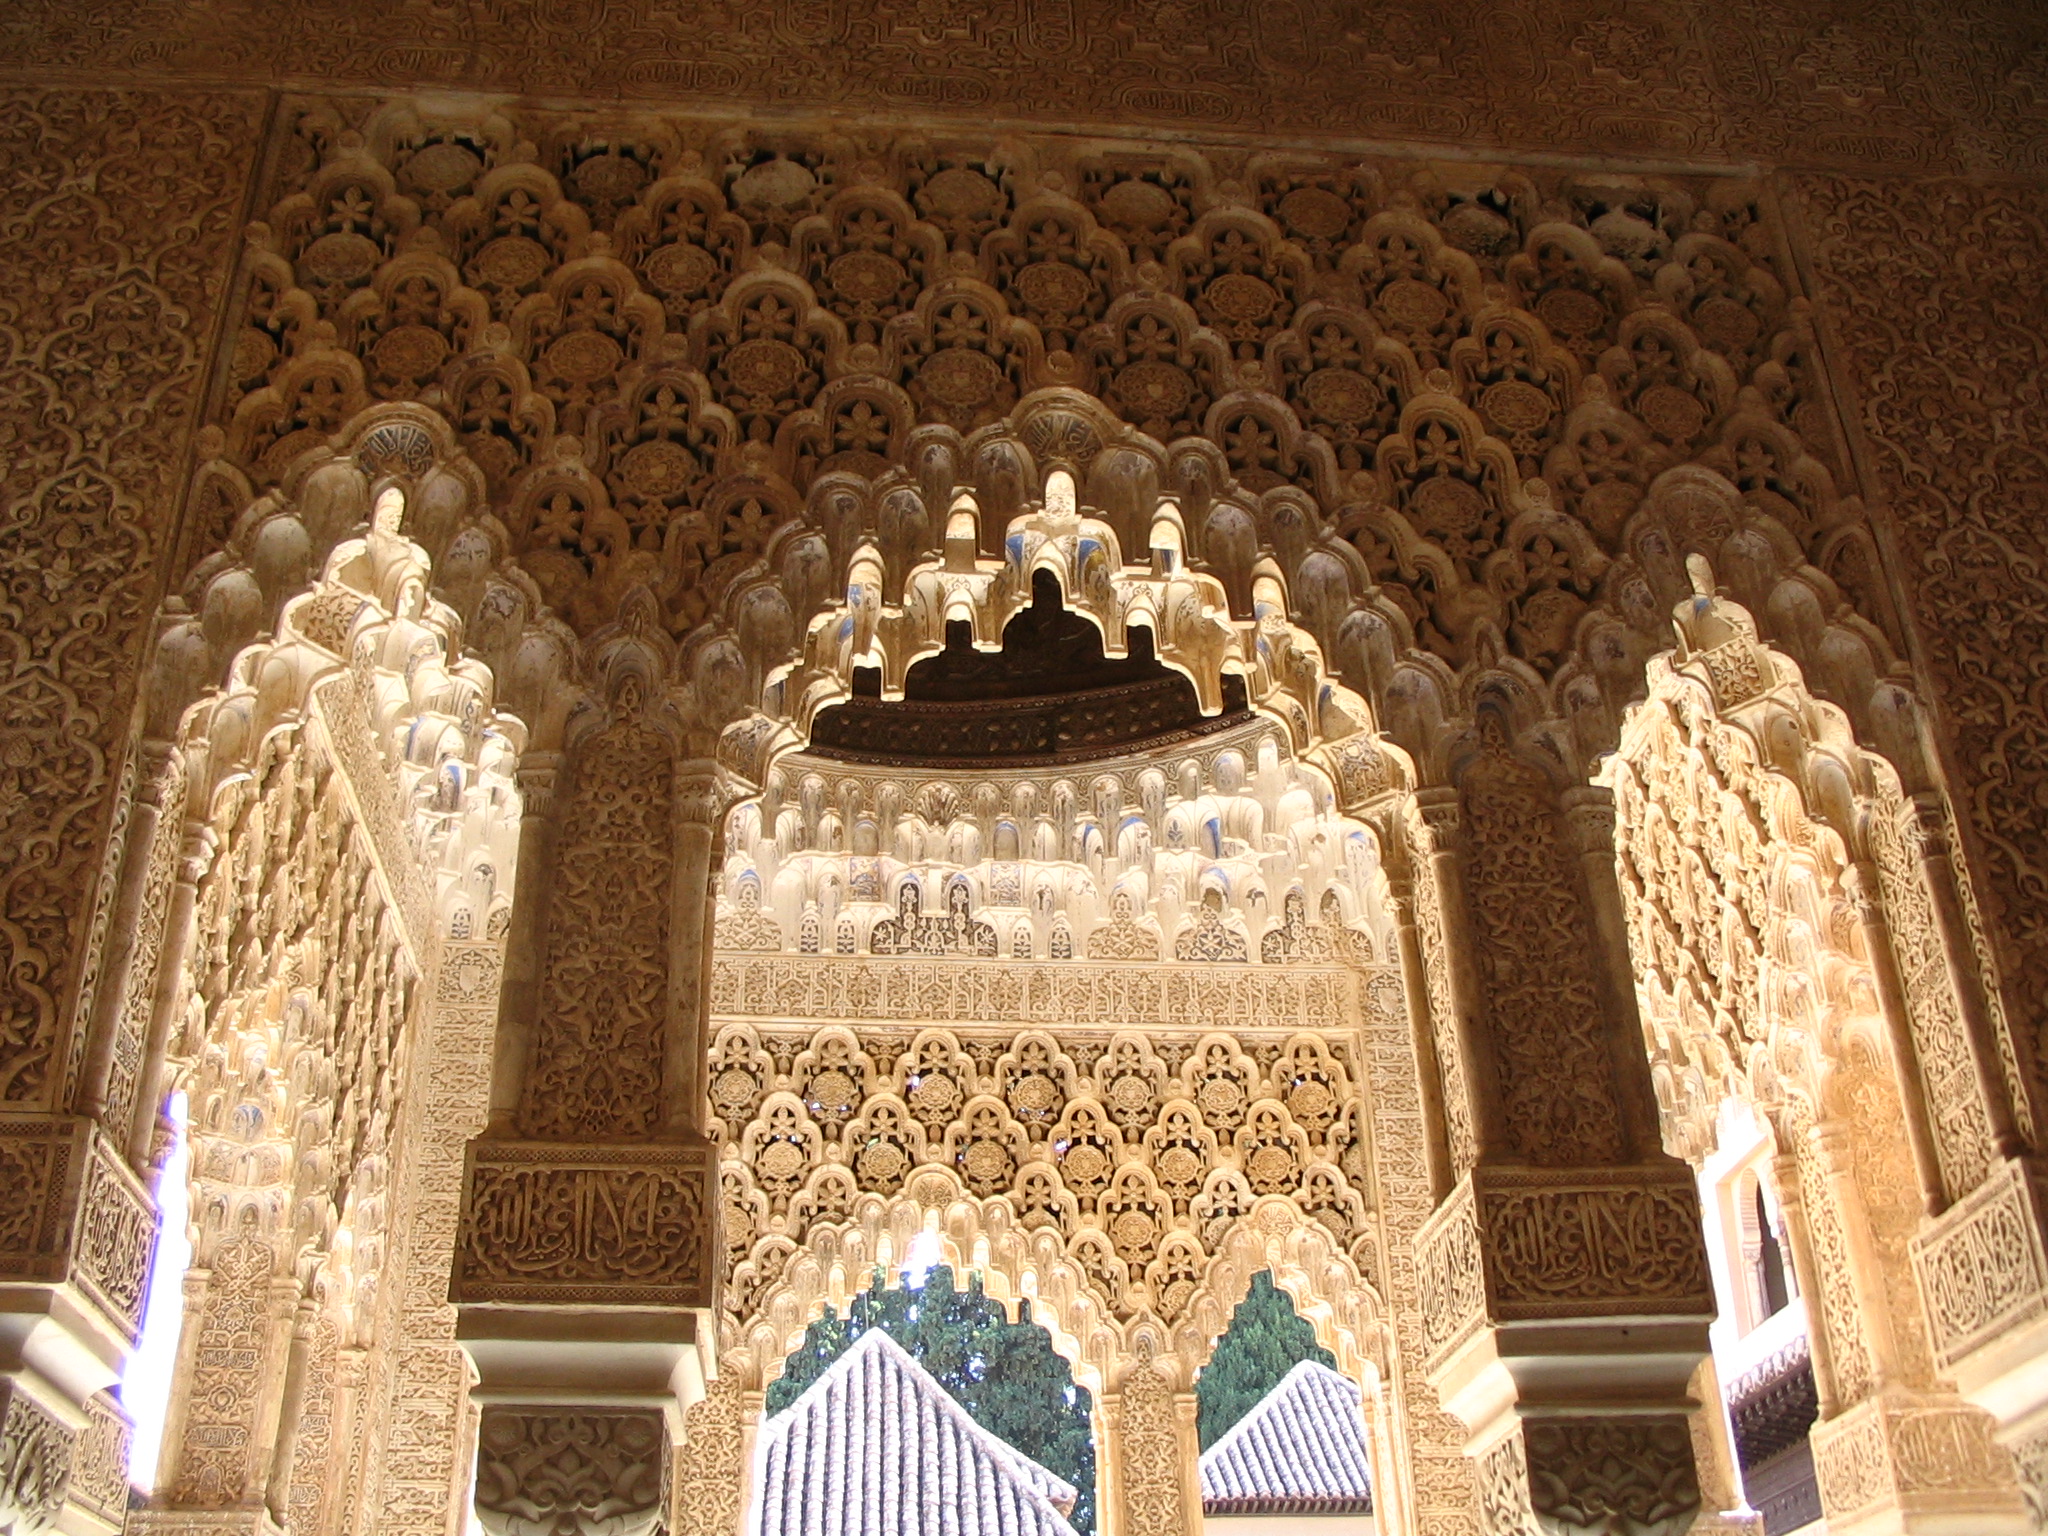 http://upload.wikimedia.org/wikipedia/commons/a/a1/Arcos_en_patio_de_los_leones,_la_Alhambra.JPG